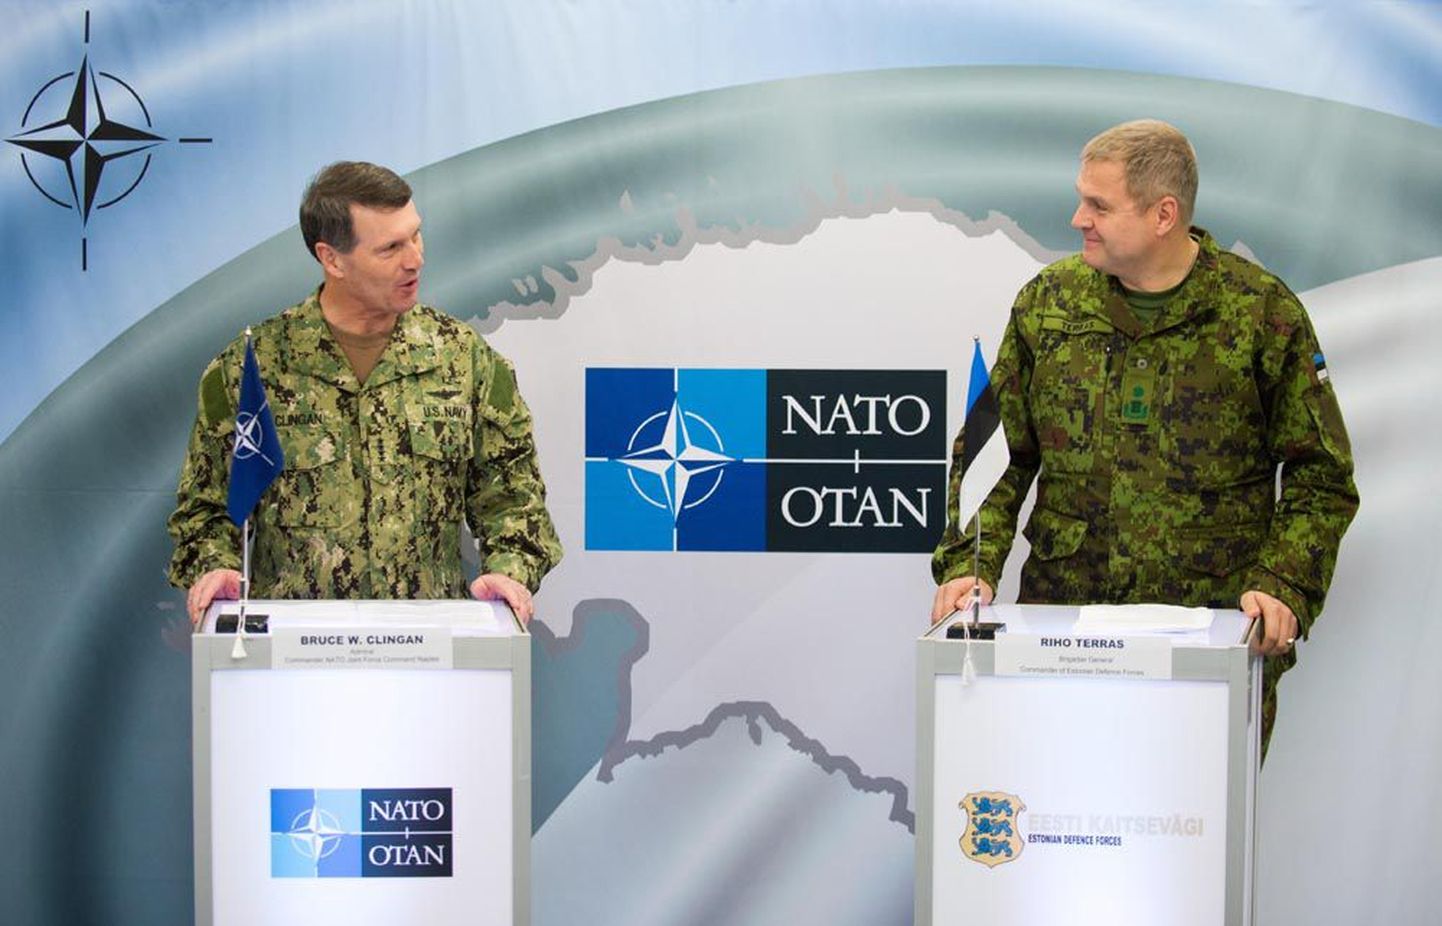 Enam kui nädala v­ältava õppuse stsenaariumi tutvustasid NATO Napoli väe­juhatuse staabi ülem admiral Bruce W. Clingan (vasakul) ja Eesti kaitseväe 
juhataja brigaadi­kindral Riho Terras.